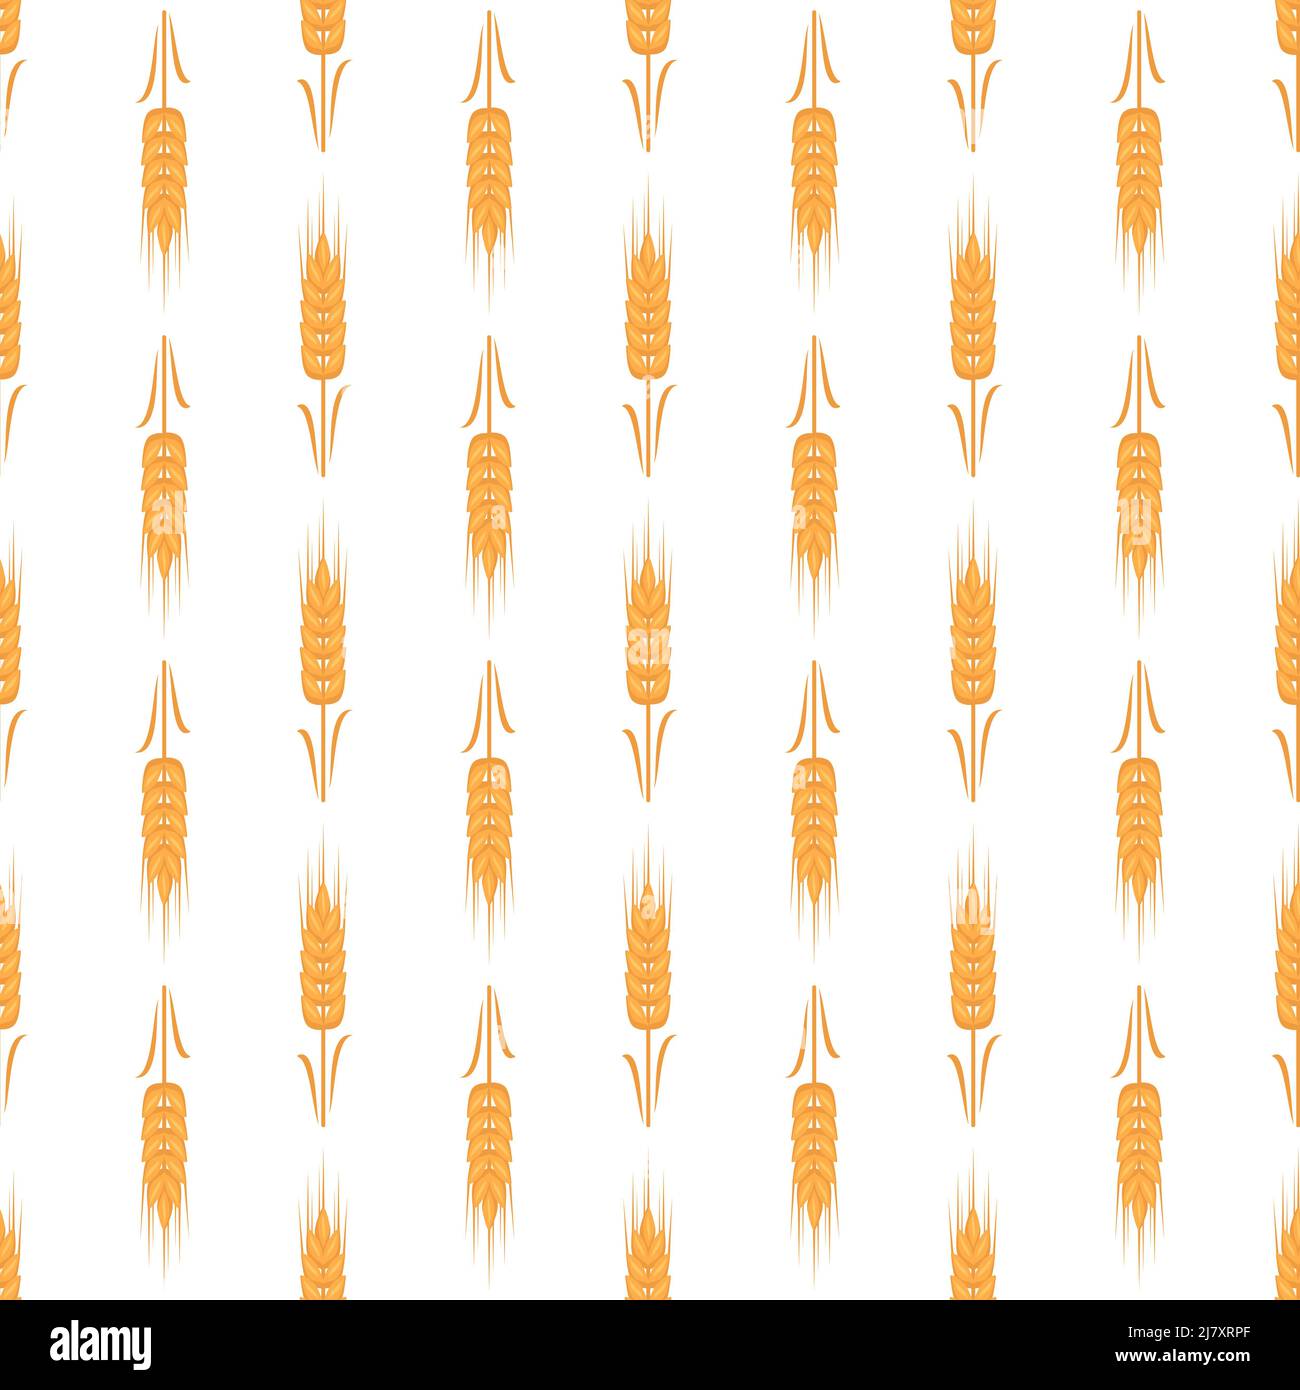 Nahtloses Muster mit goldenem Weizenohr auf weißem Hintergrund. Druck von Körnern zur Herstellung von Mehl, Brot und anderen Lebensmitteln. Vektorgrafik flach Stock Vektor